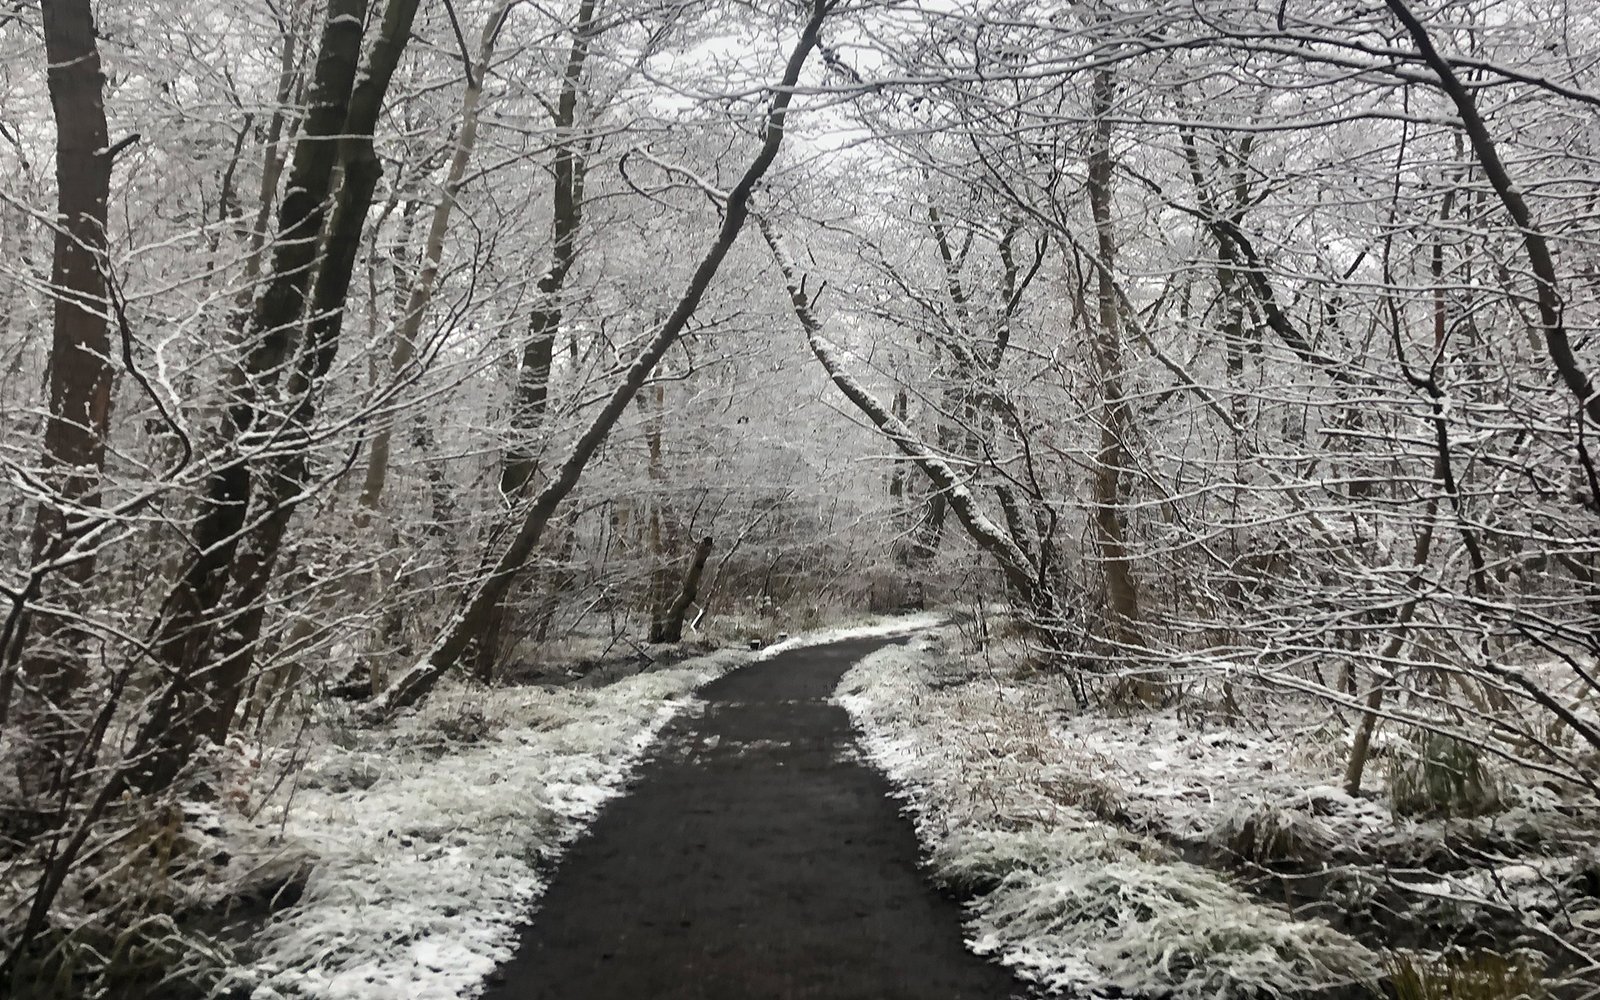 Path through snowy forest